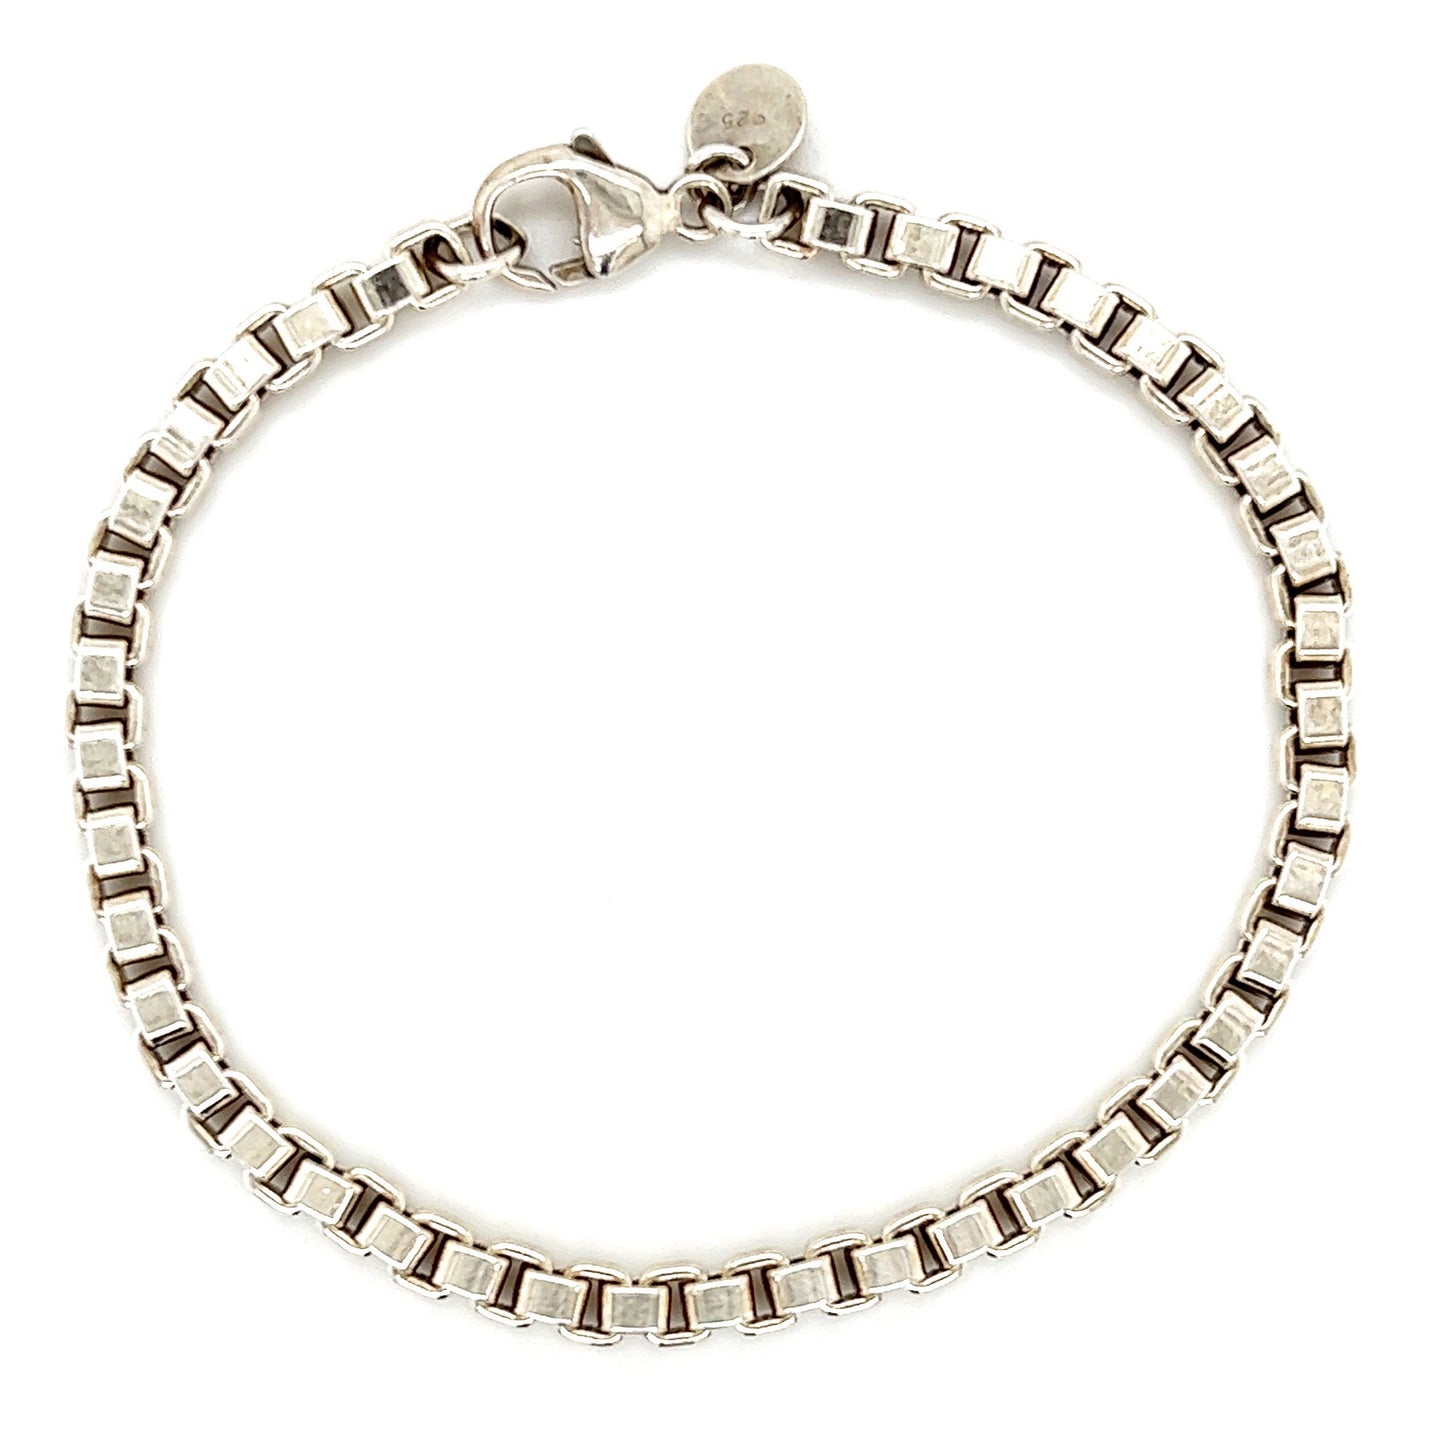 Tiffany & Co. Venetian Bracelet